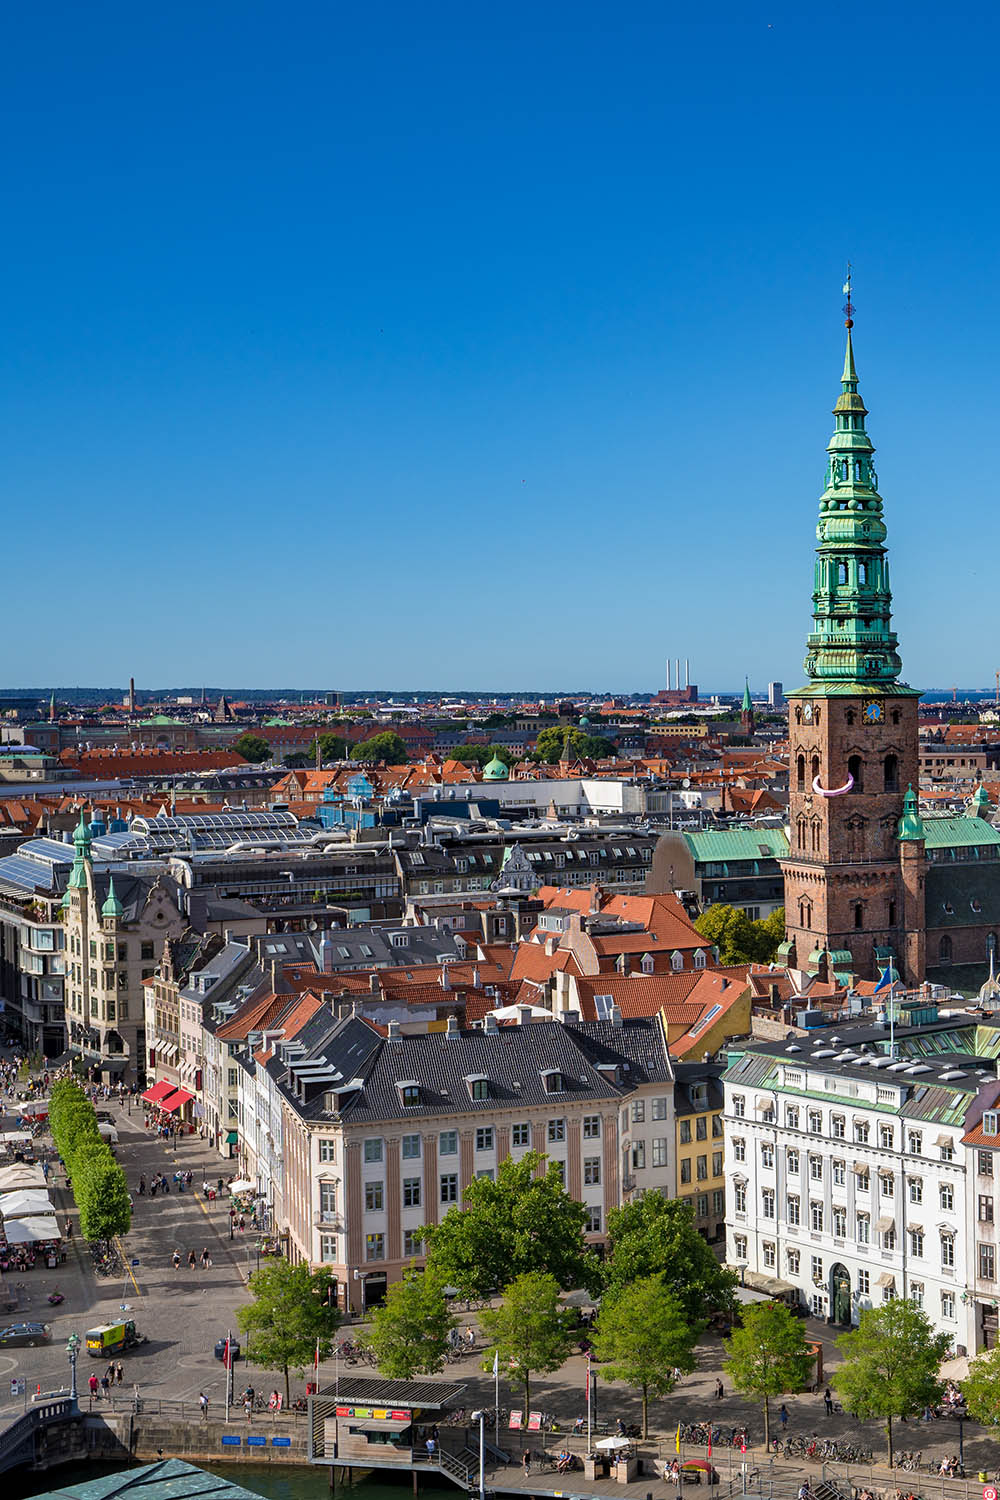 Gelebte urbane Zukunft in Kopenhagen